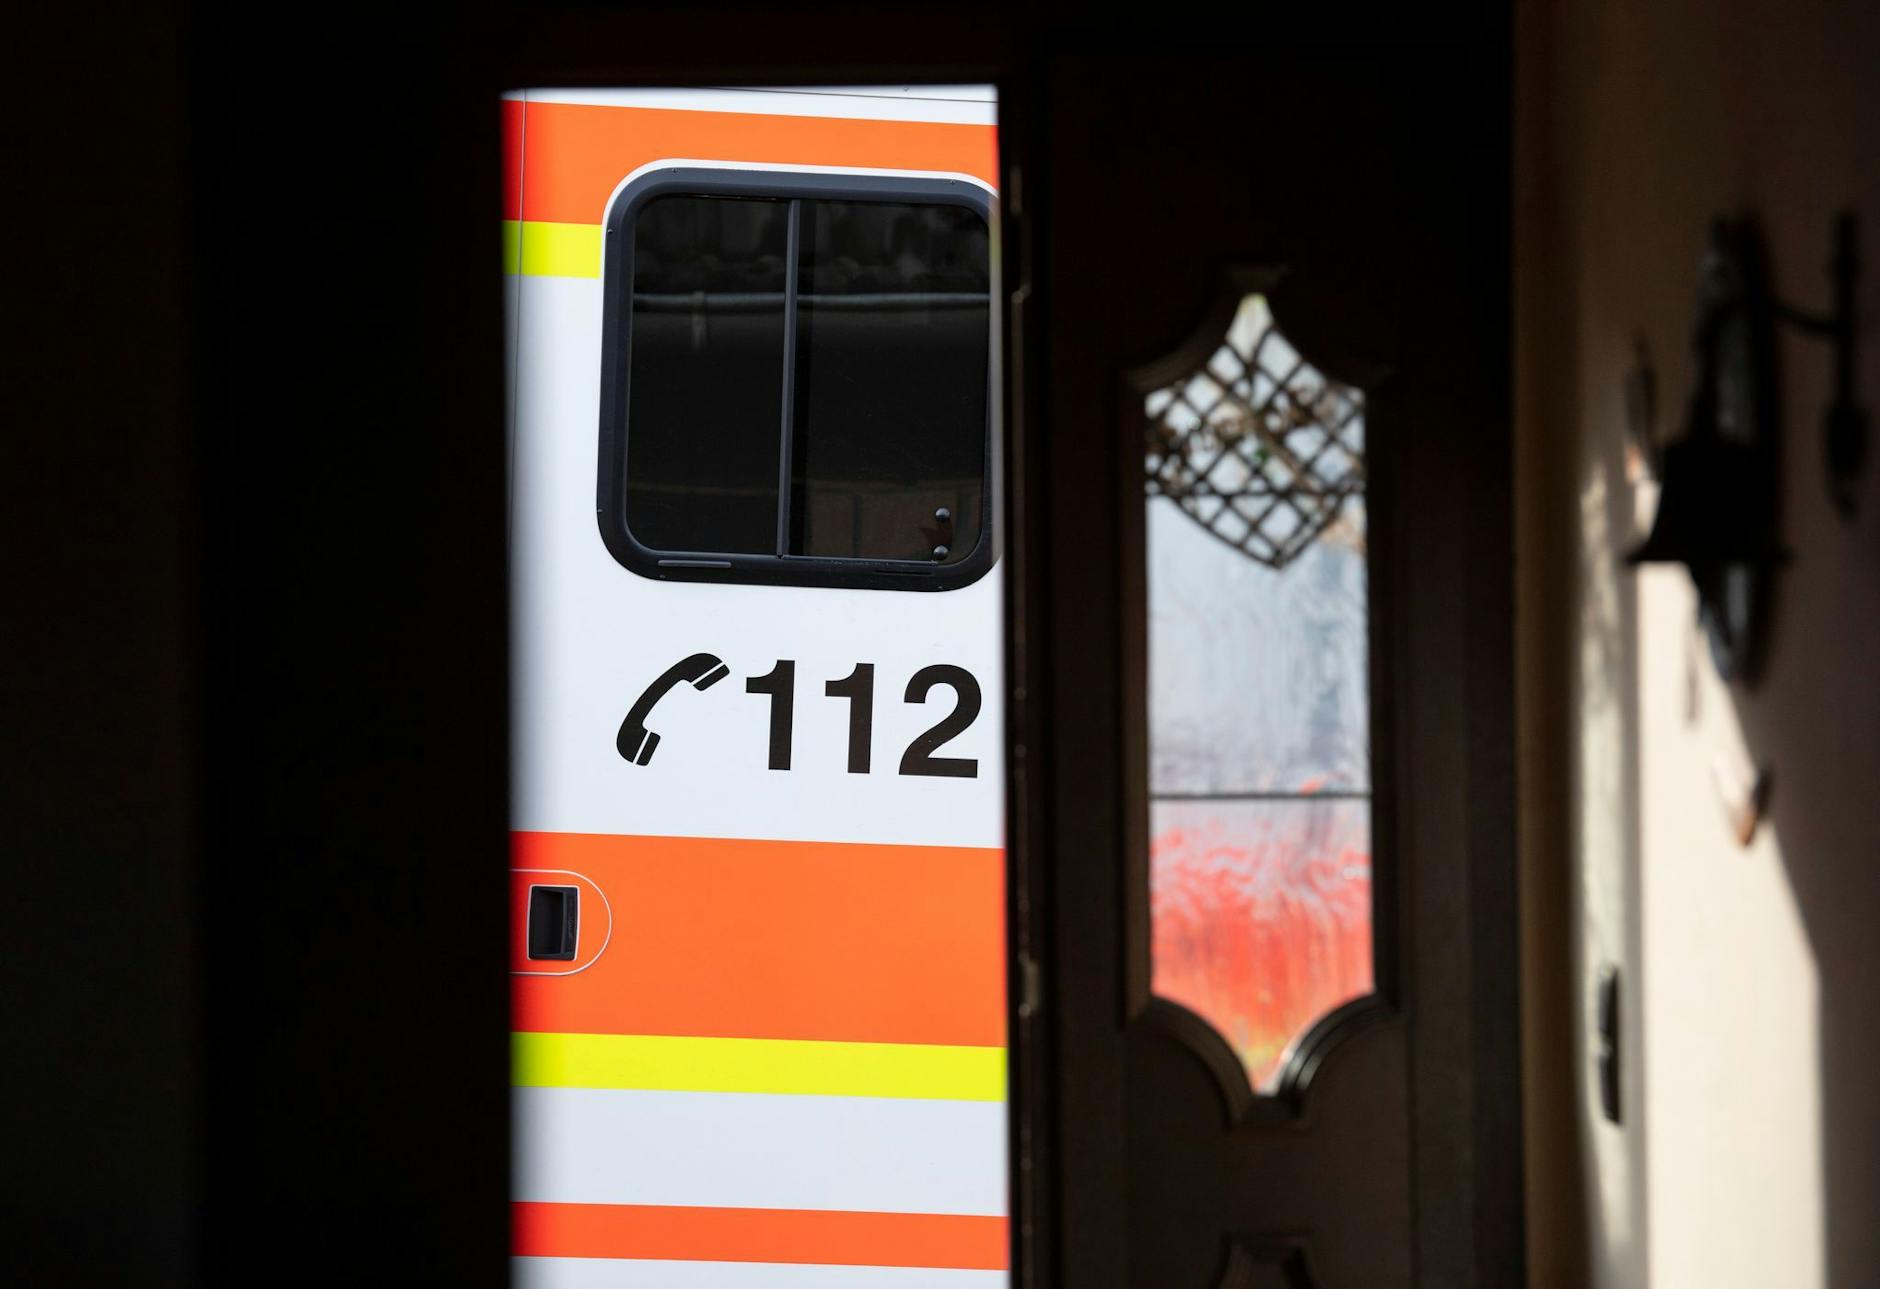 ARCHIV - Ein Rettungswagen parkt vor der geöffneten Tür eines Wohnhauses.  